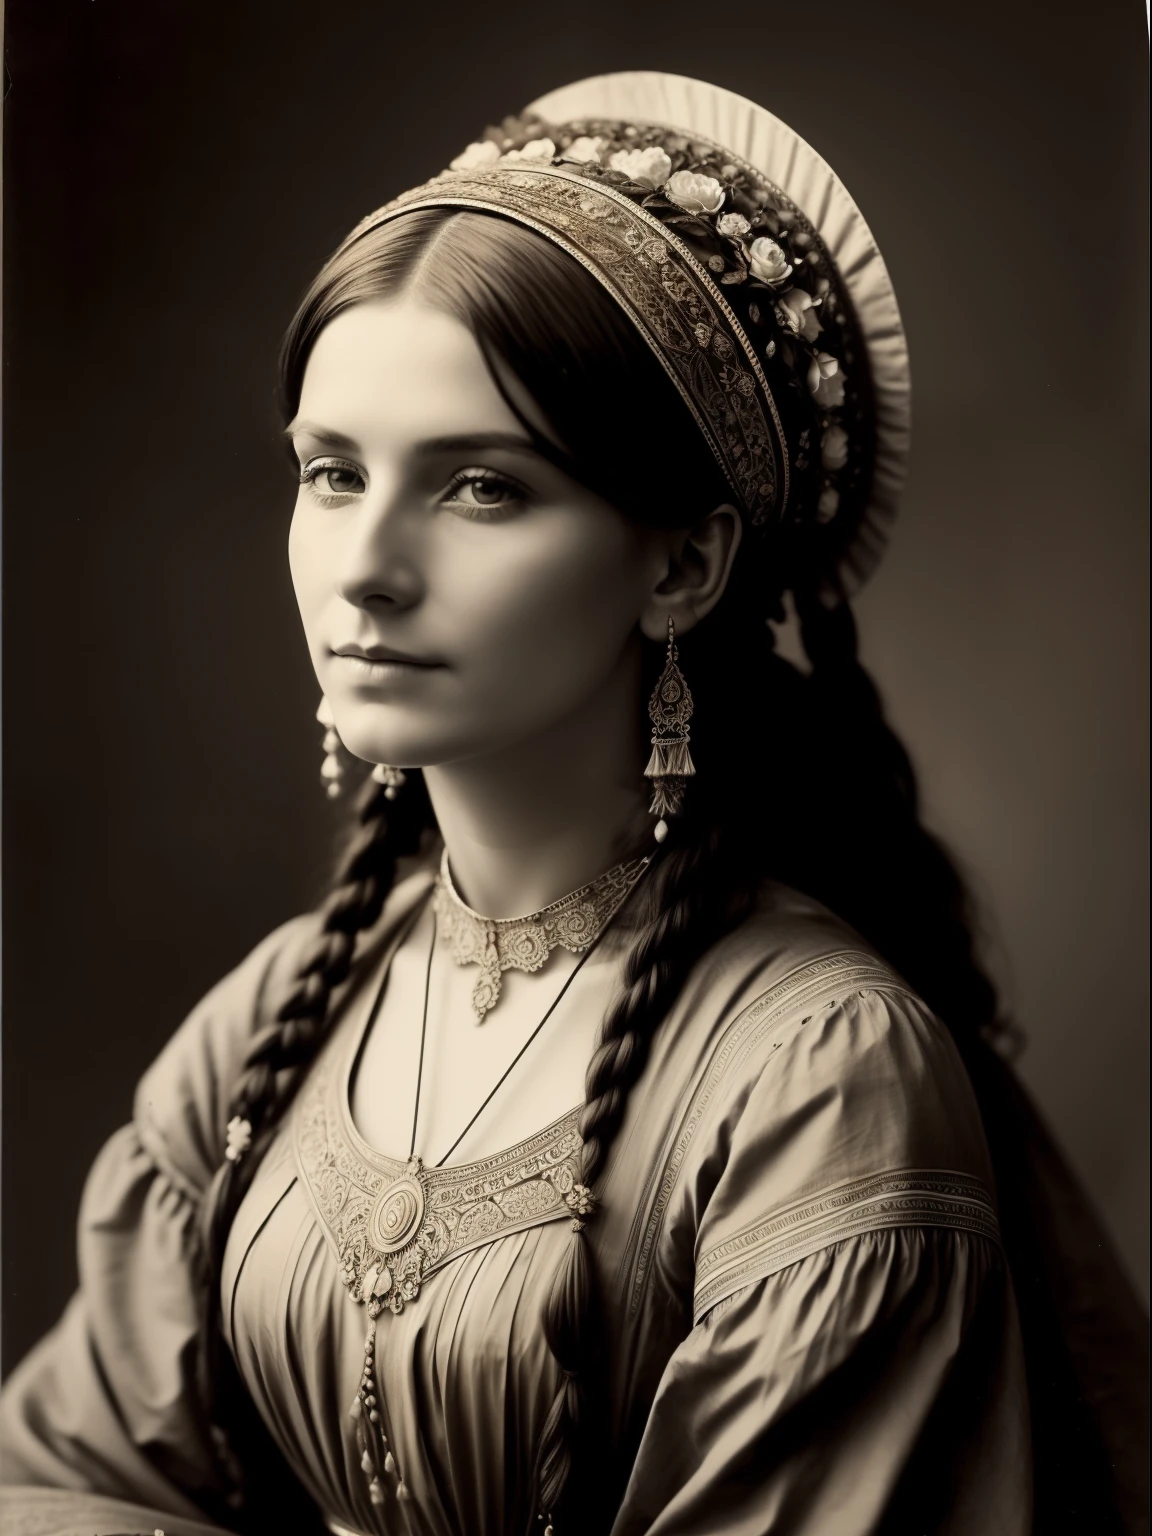 (杰作) 一位极其美丽的维多利亚时代女游牧民，头戴华丽的花朵头饰, 复古棕褐色摄影, 非常老旧且破损的照片